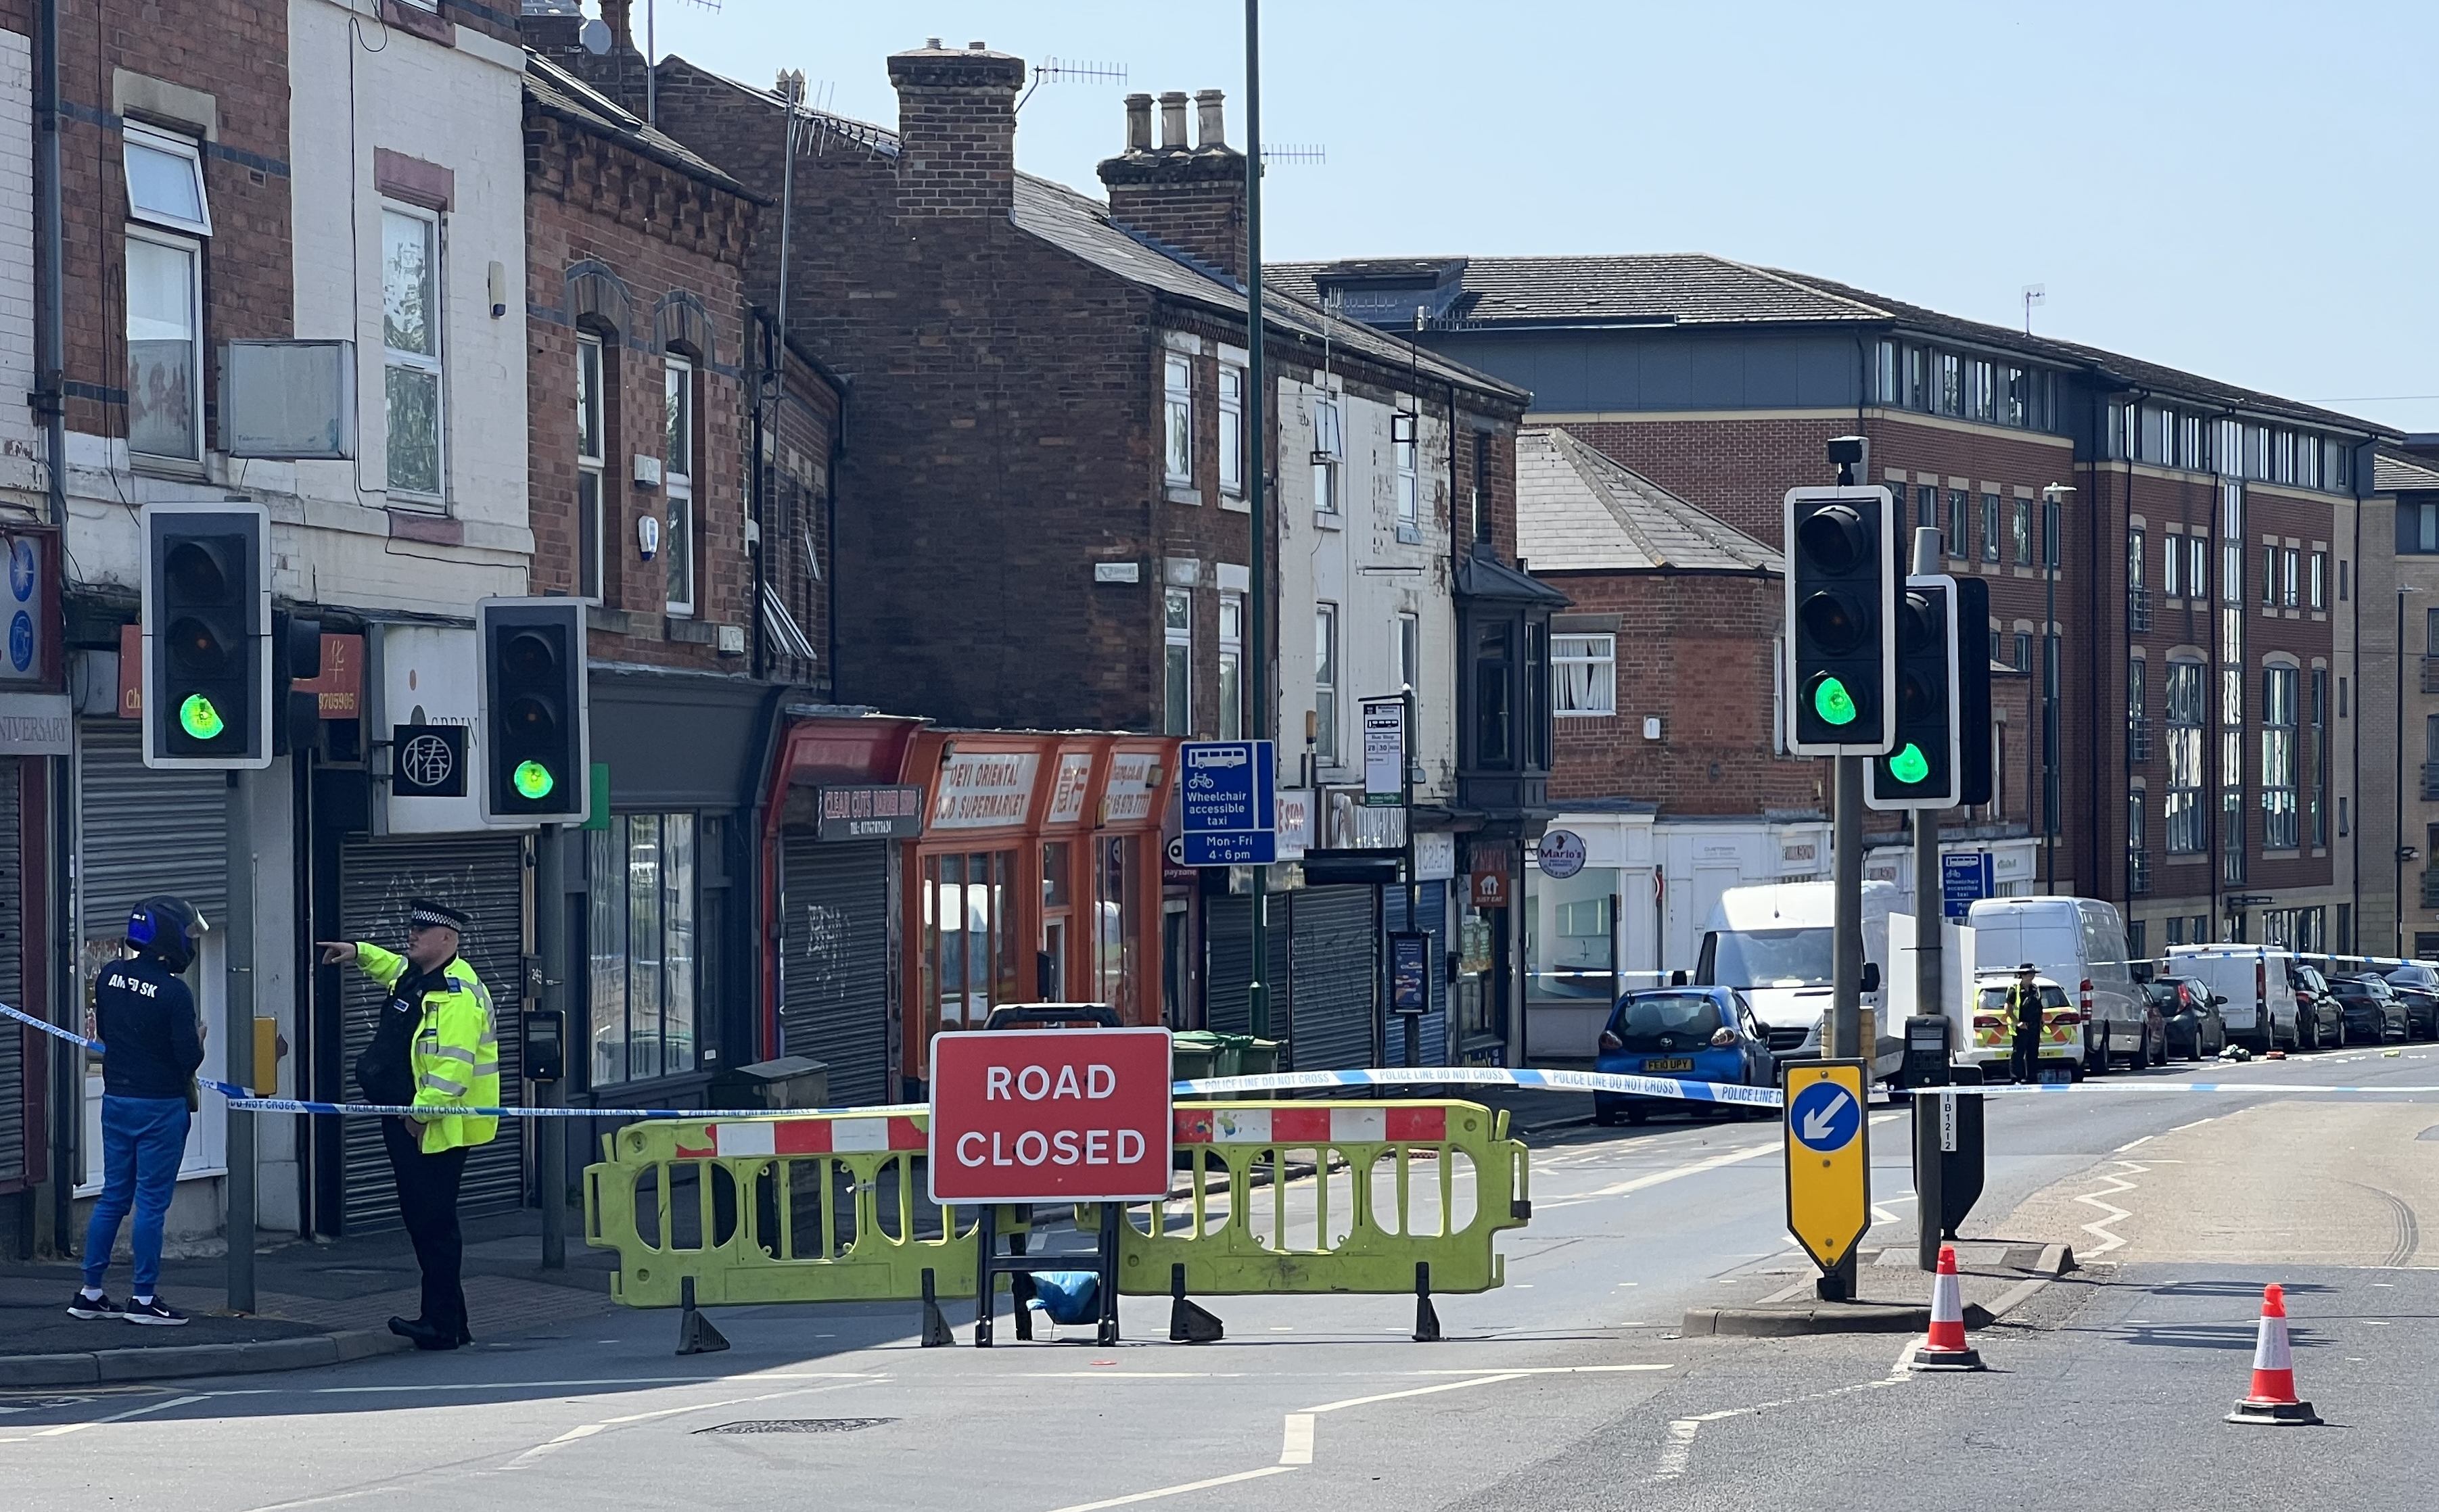 Nottingham'da 3 kişi ölü bulundu